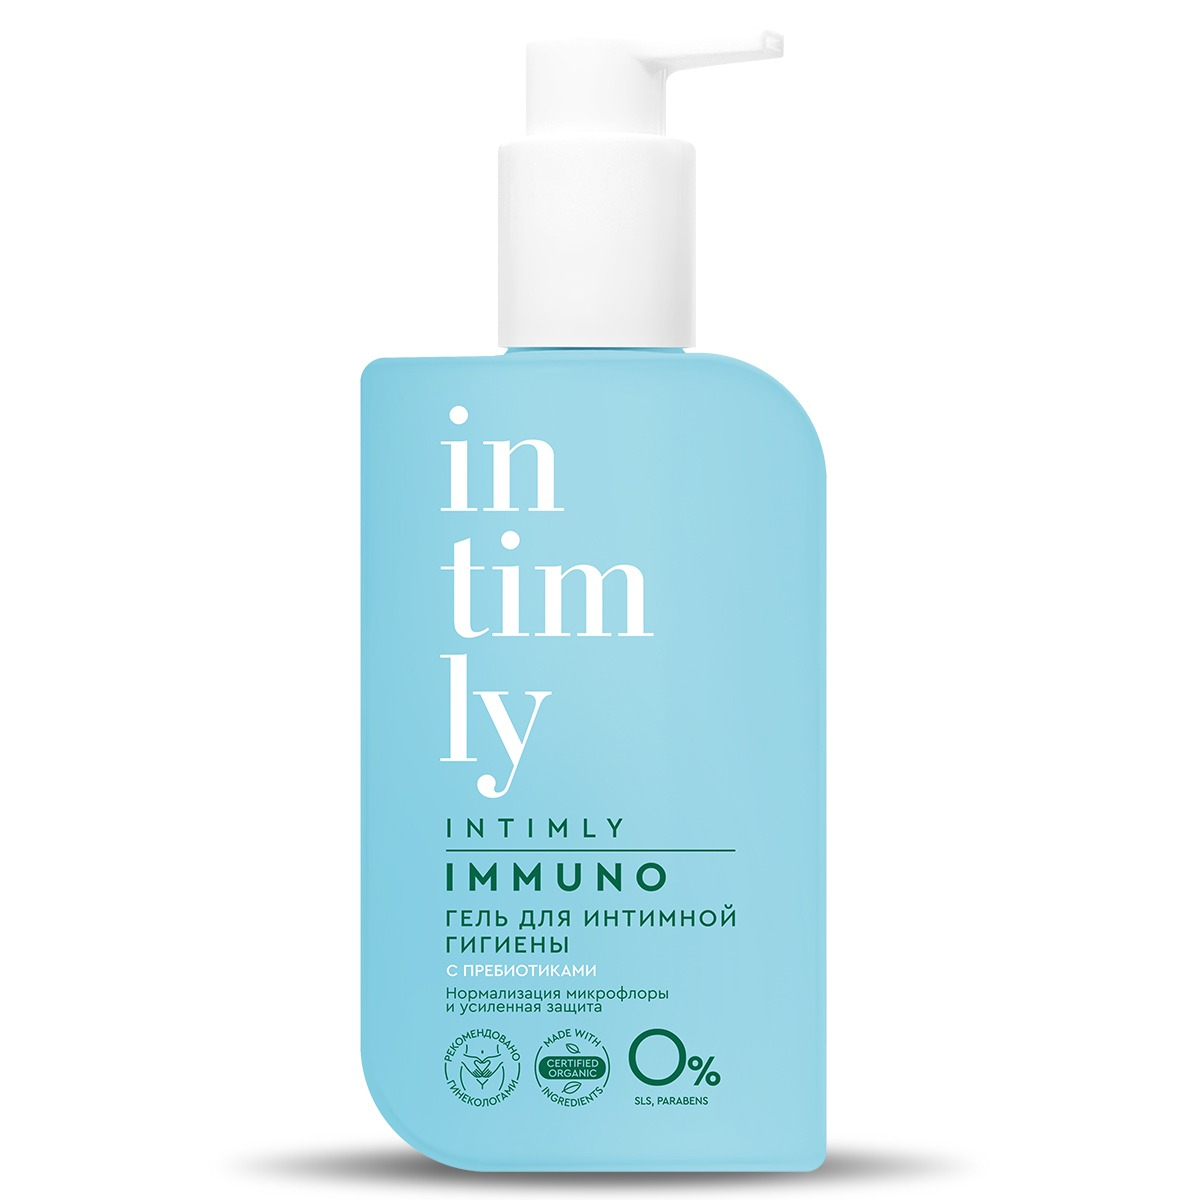 Гель для интимной гигиены Intimly Immuno с пребиотиками 200 мл гель крем для интимной гигиены для чувствительной кожи 200мл